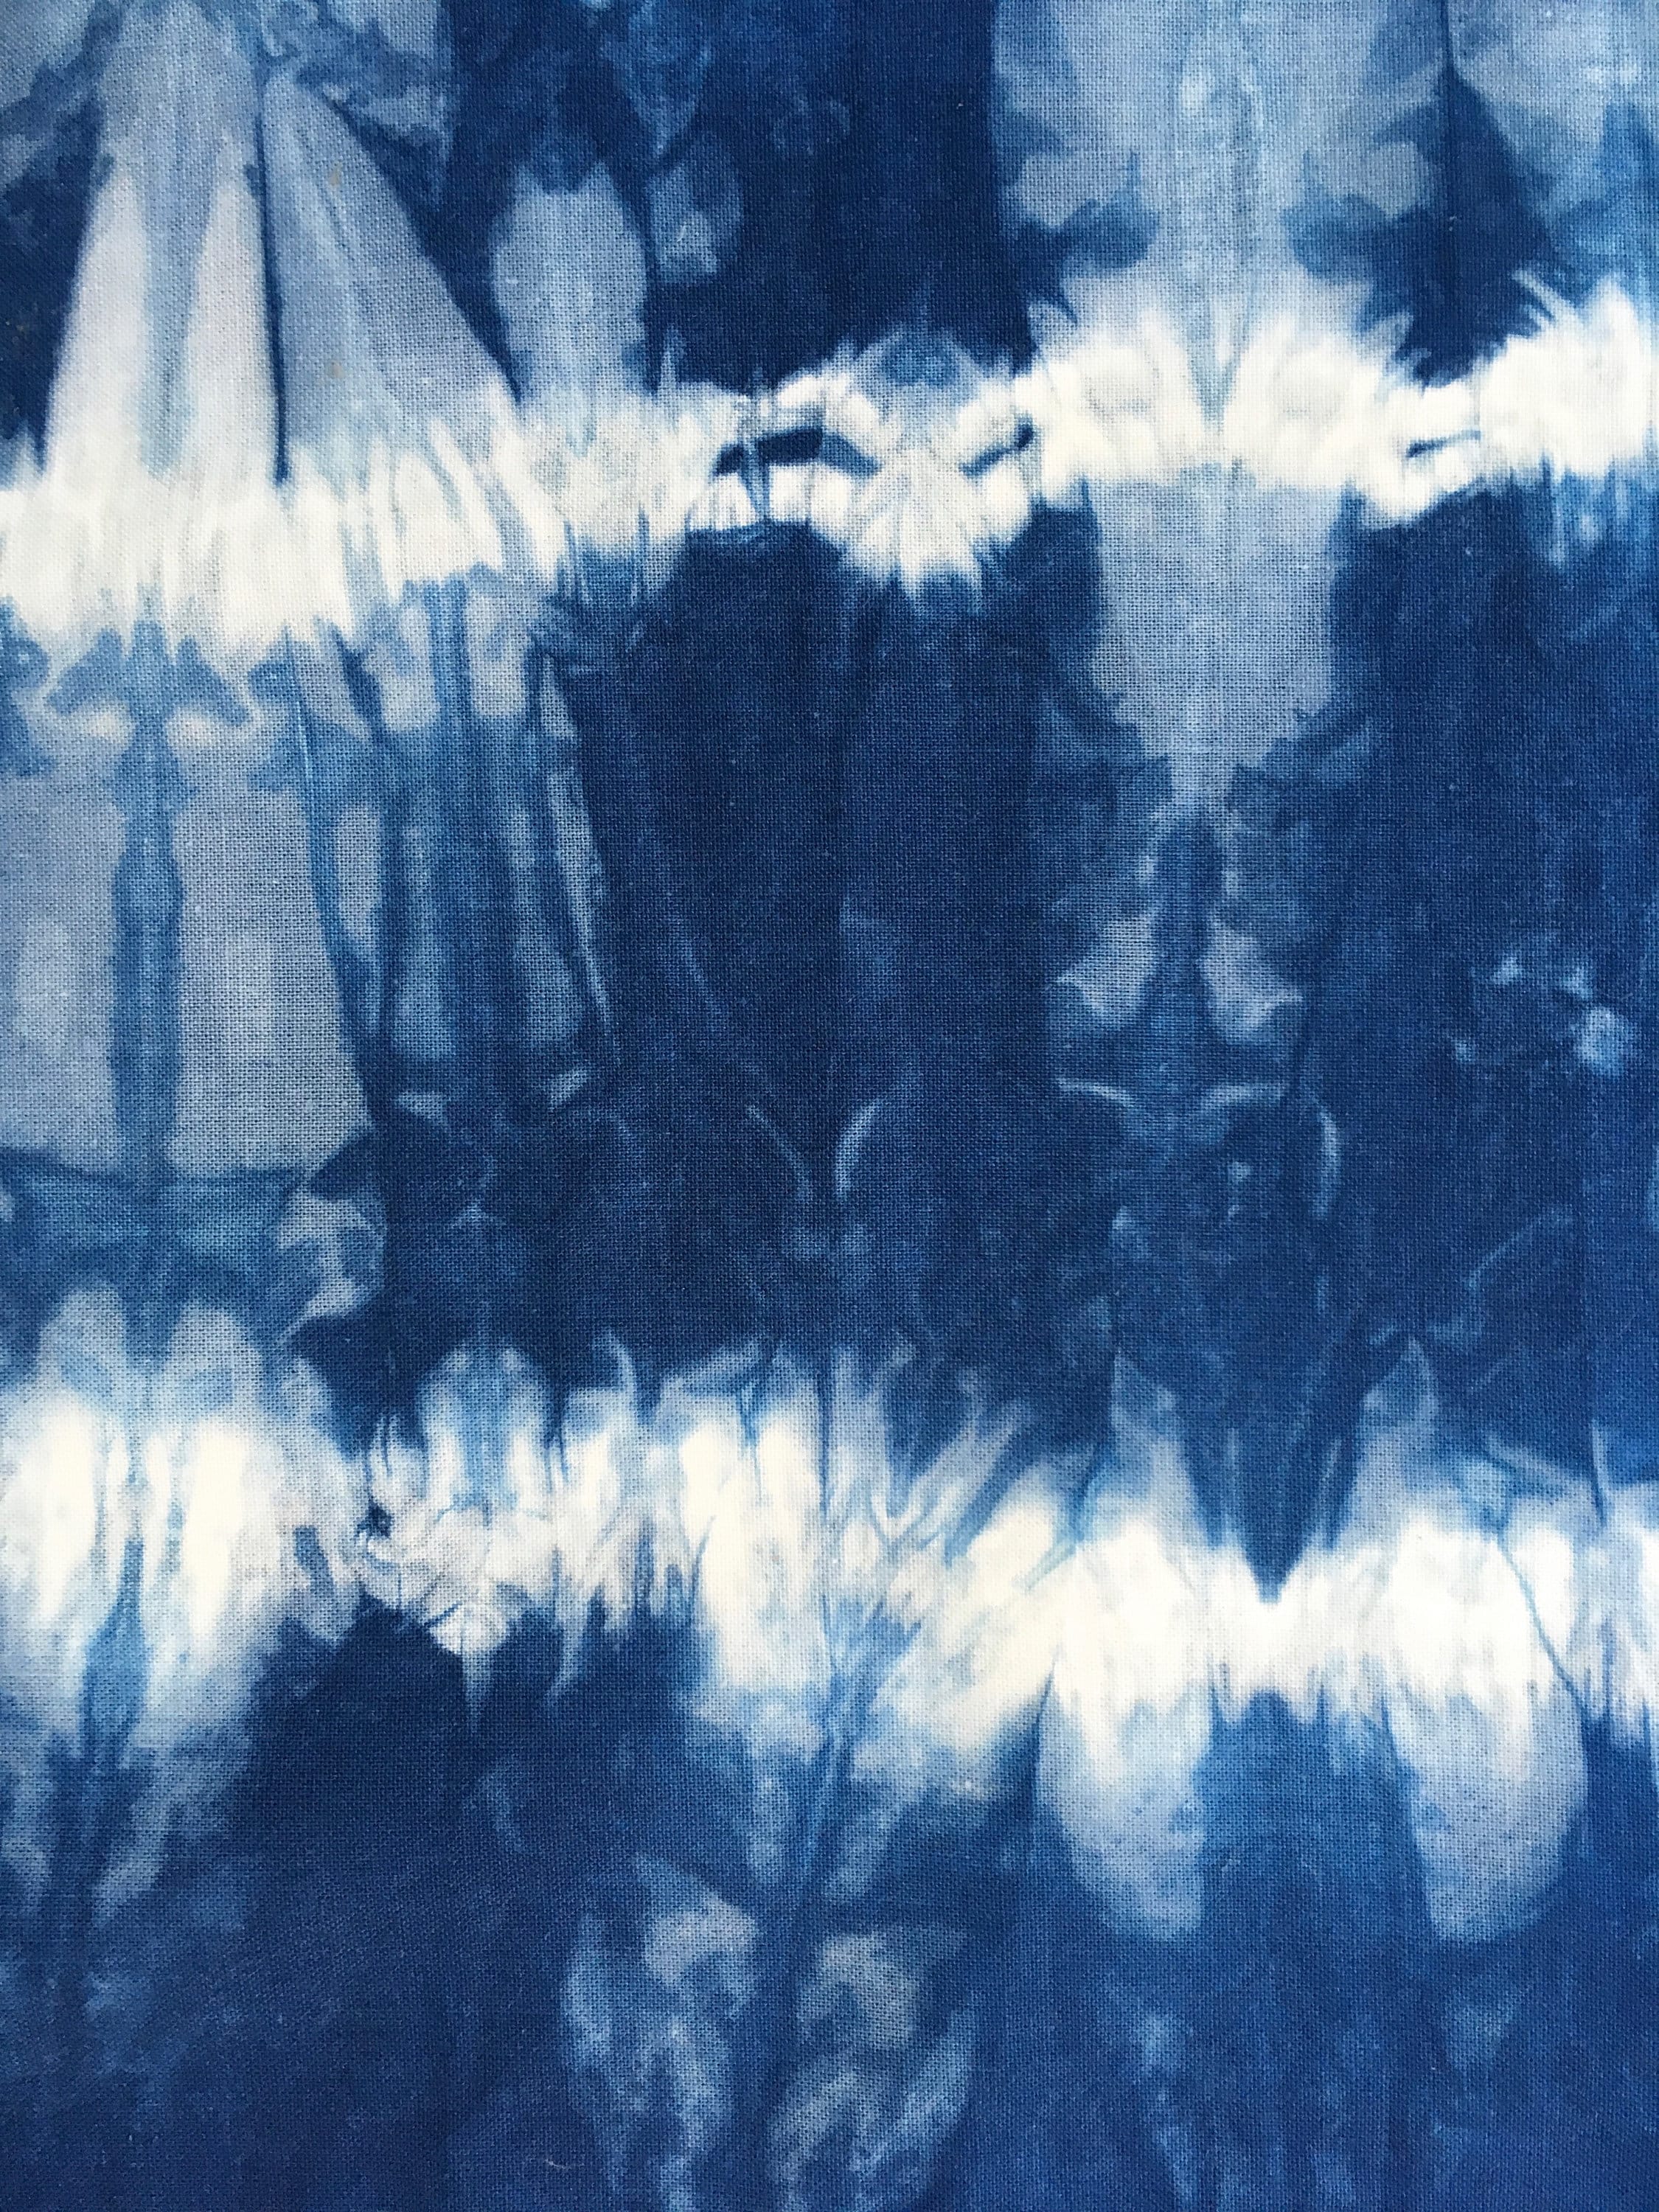 Shibori Fabric Indigo Dyed Fat Quarters Blue and White | Etsy